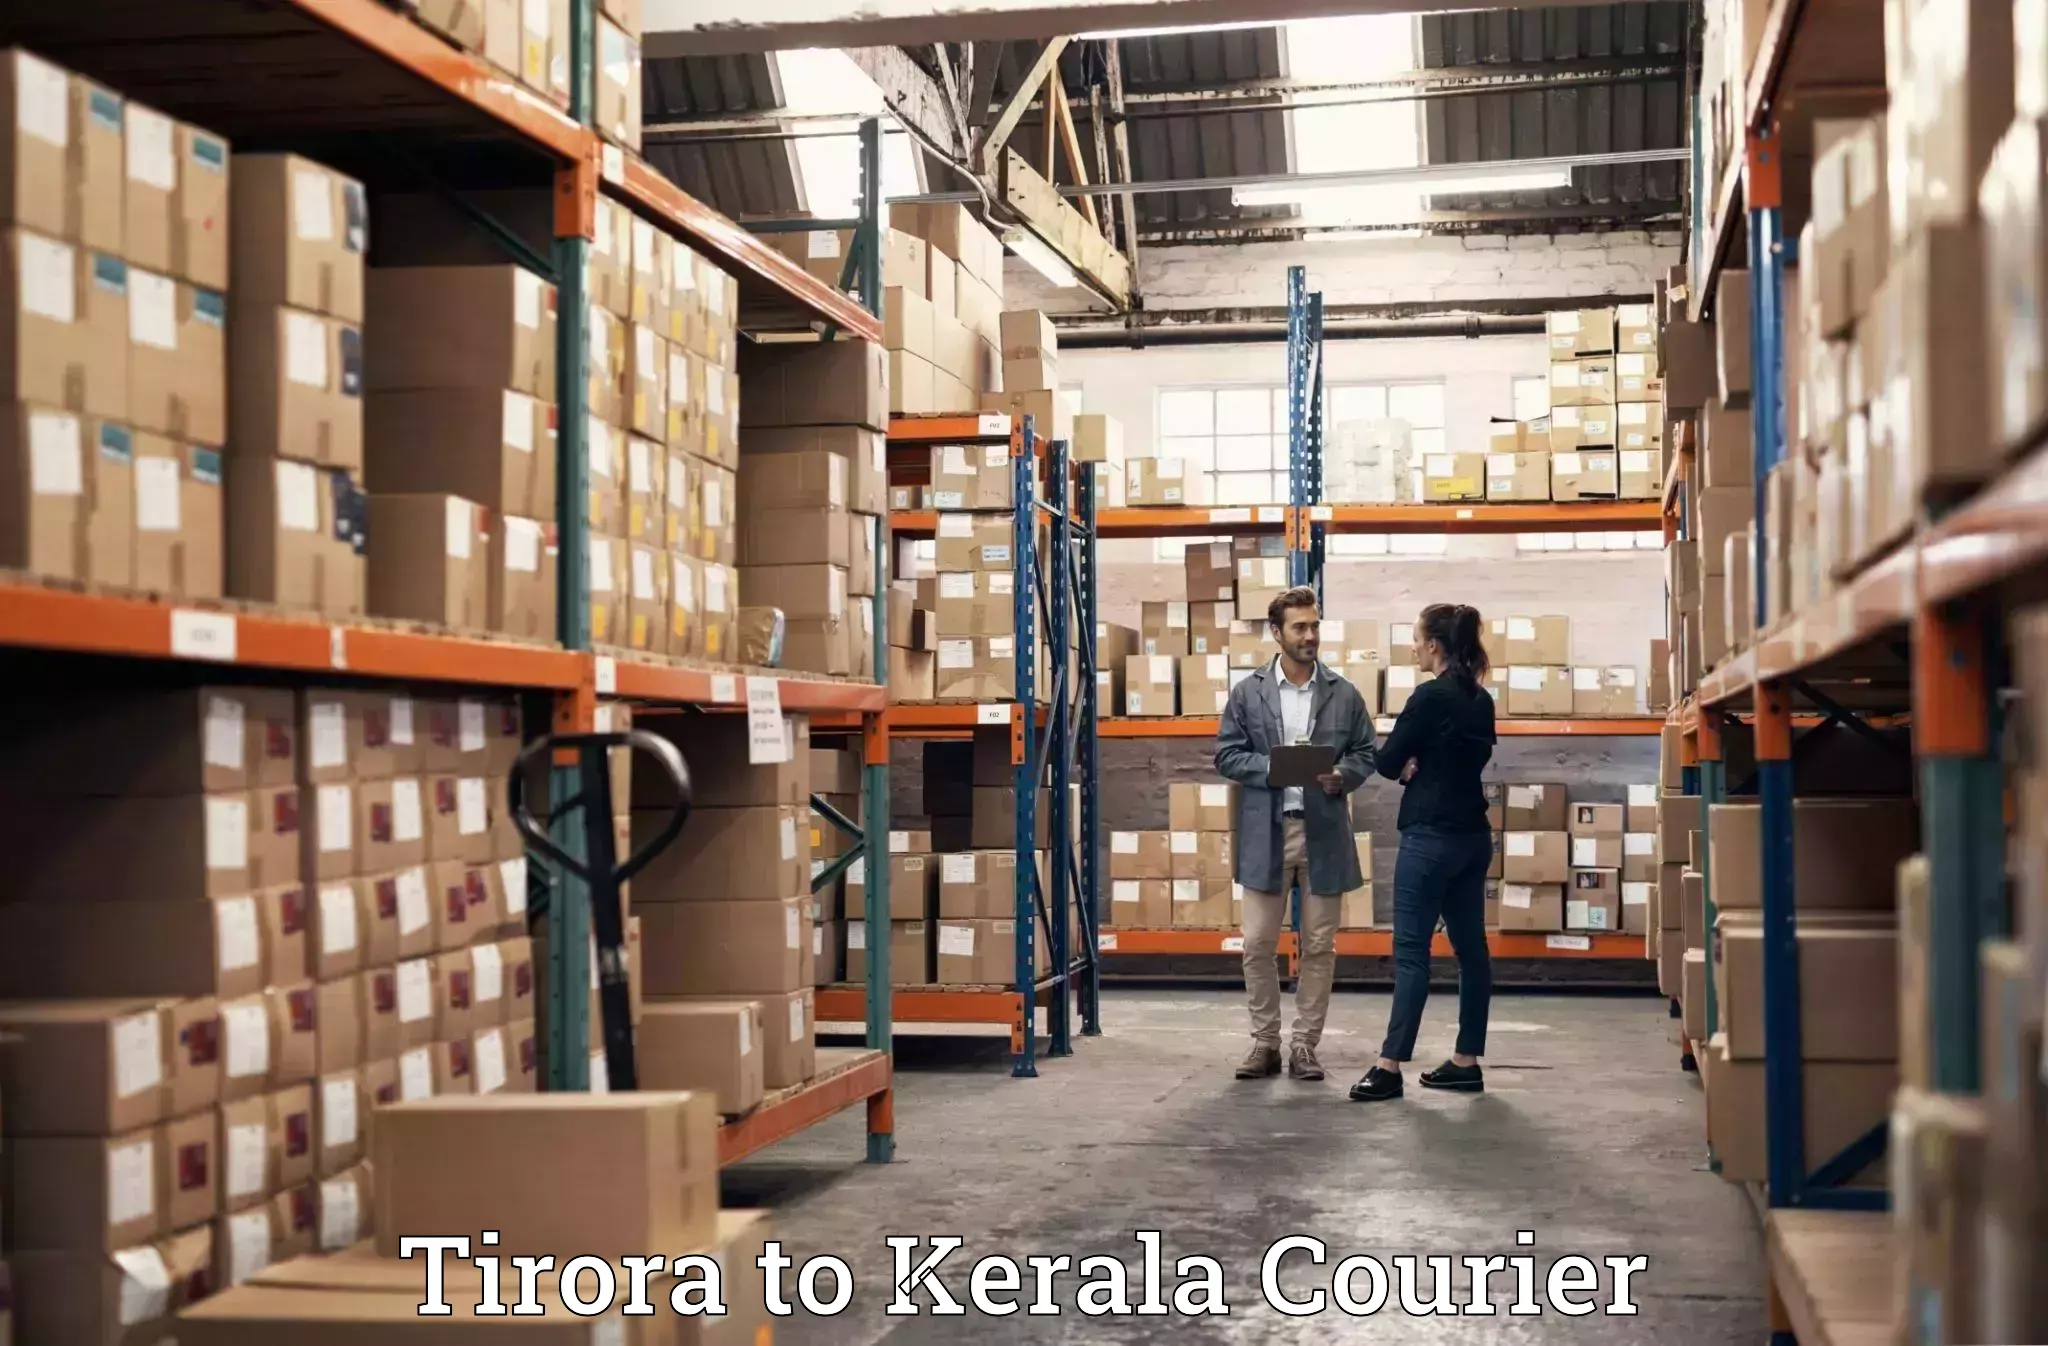 Baggage transport network Tirora to Kerala